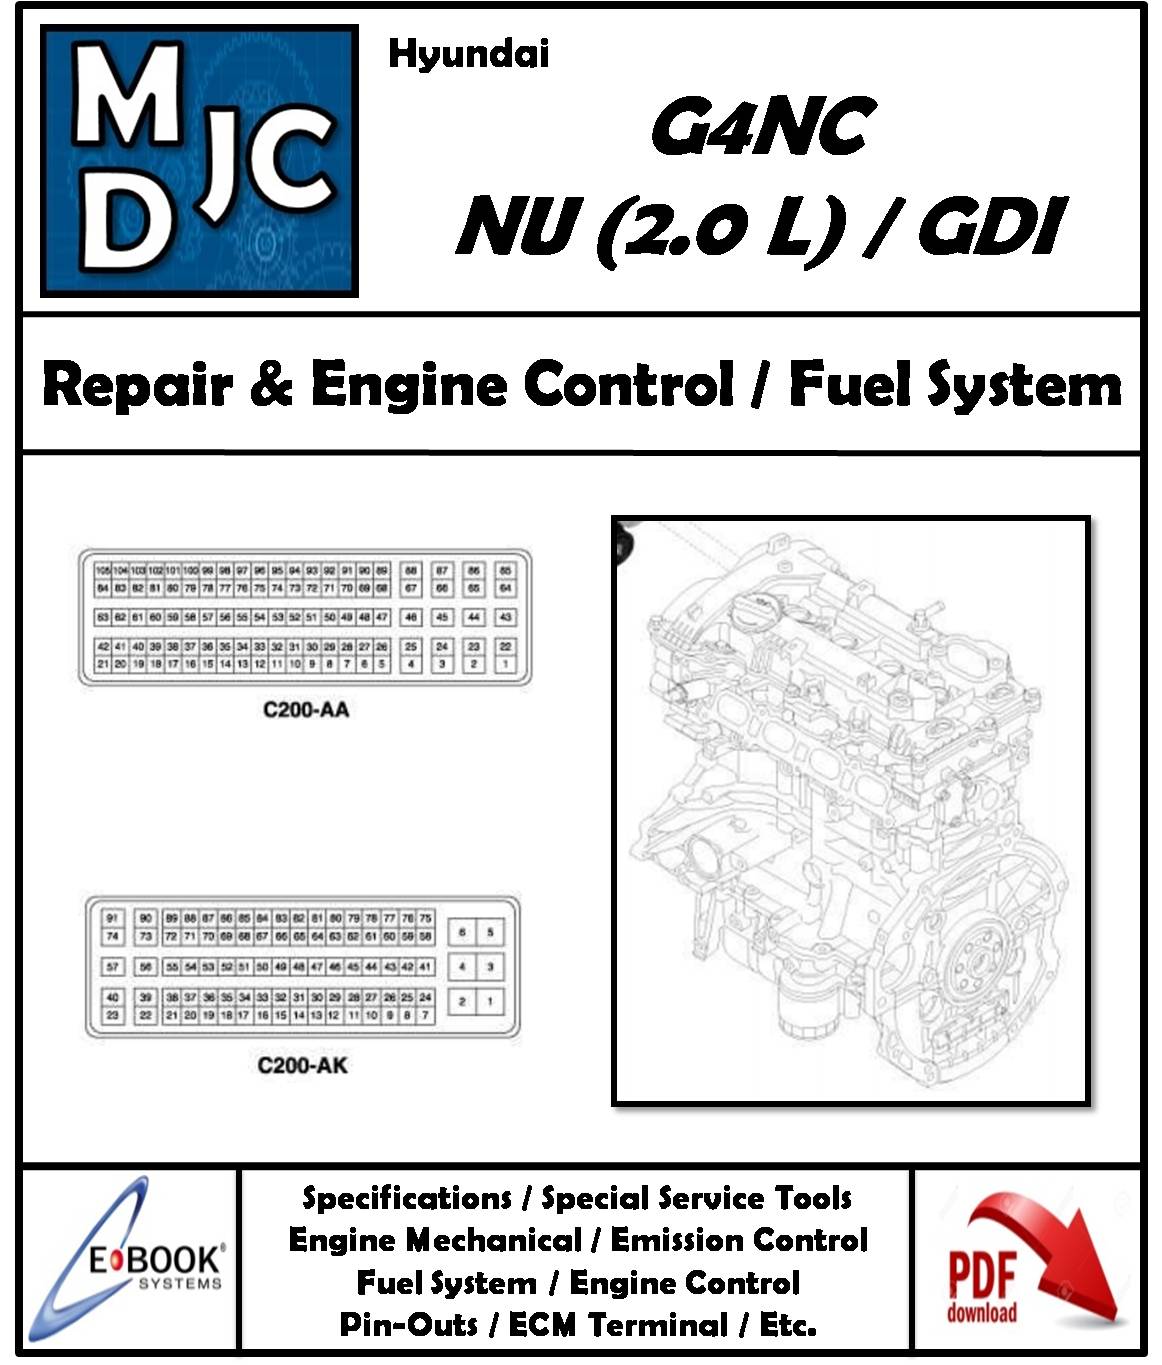 Hyundai G4NC NU 2.0 L DOHC / GDI